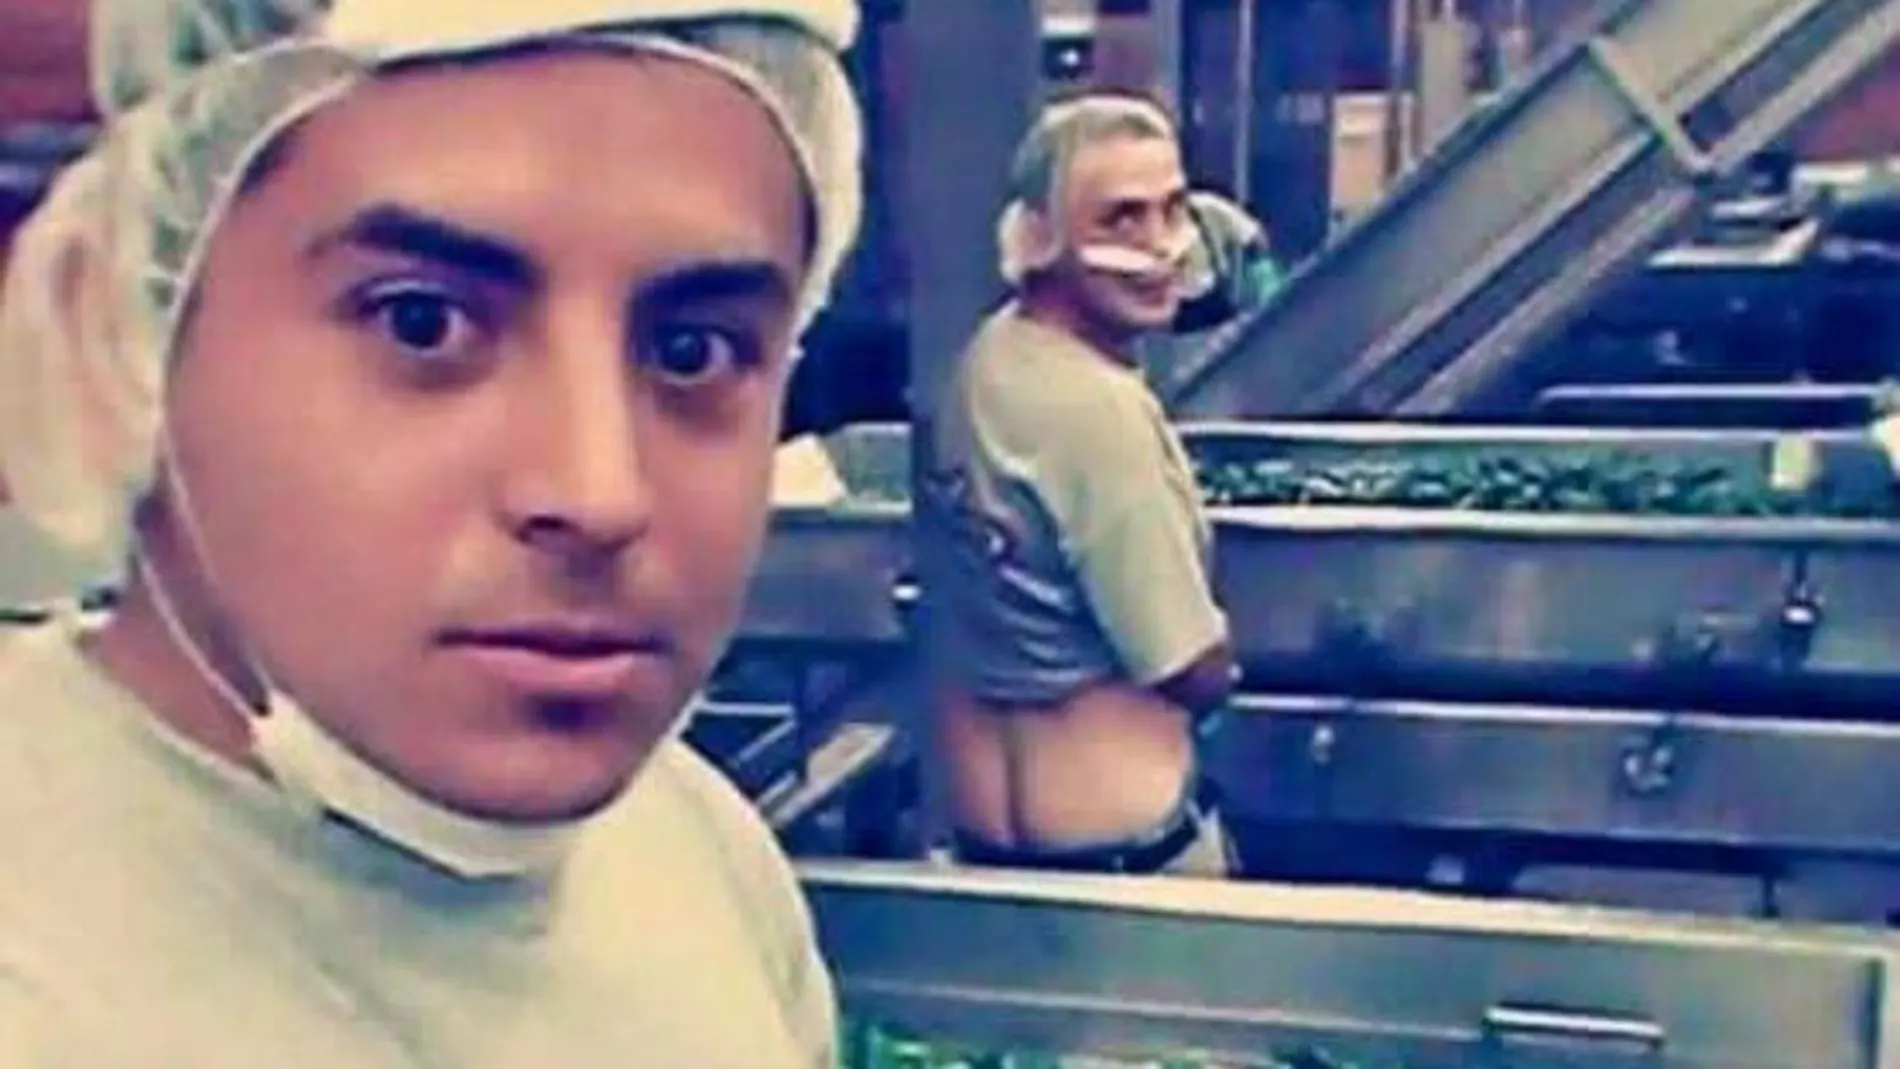 Una empresa mexicana se disculpa tras hacerse viral la imagen de dos empleados orinando sobre chiles